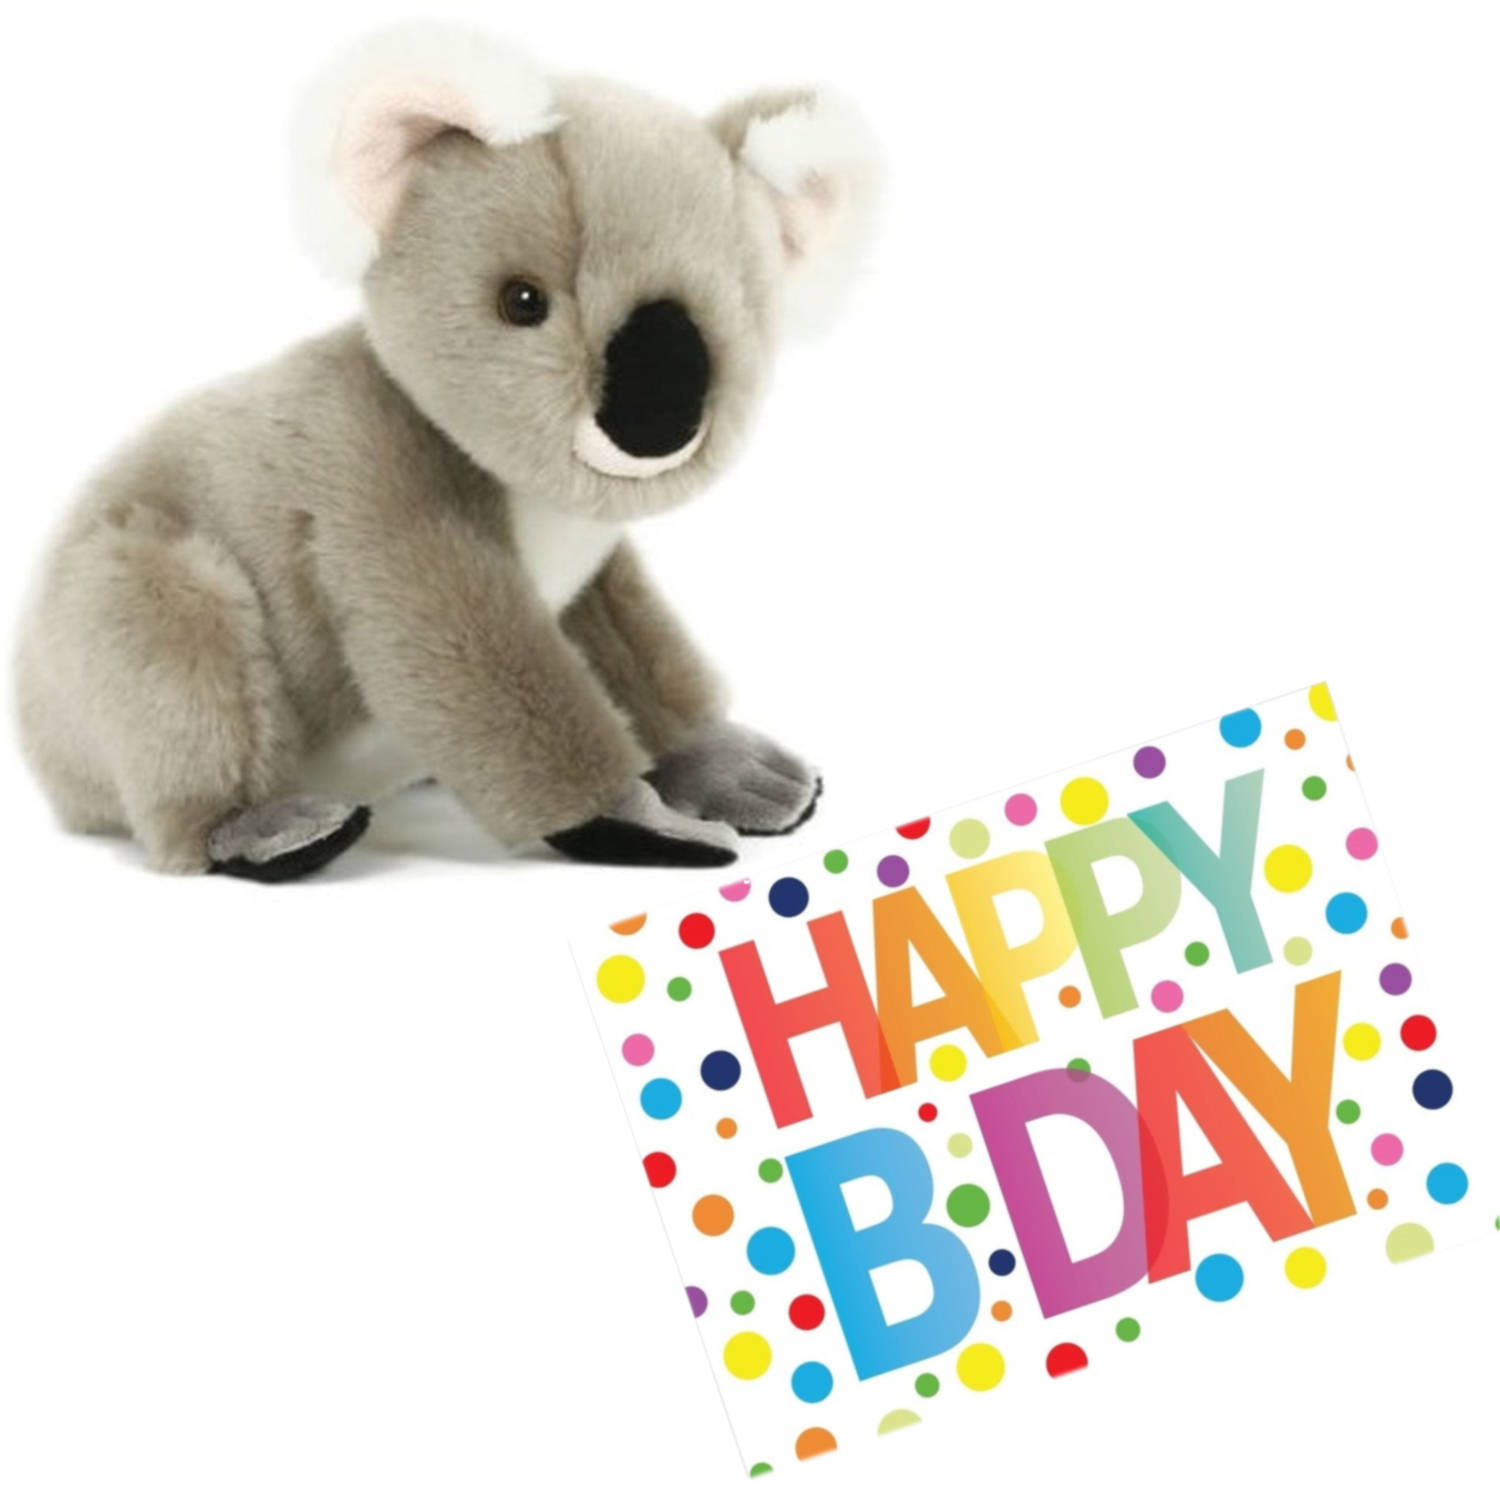 Pluche knuffel koala beer 20 cm met A5-size Happy Birthday wenskaart Knuffeldier